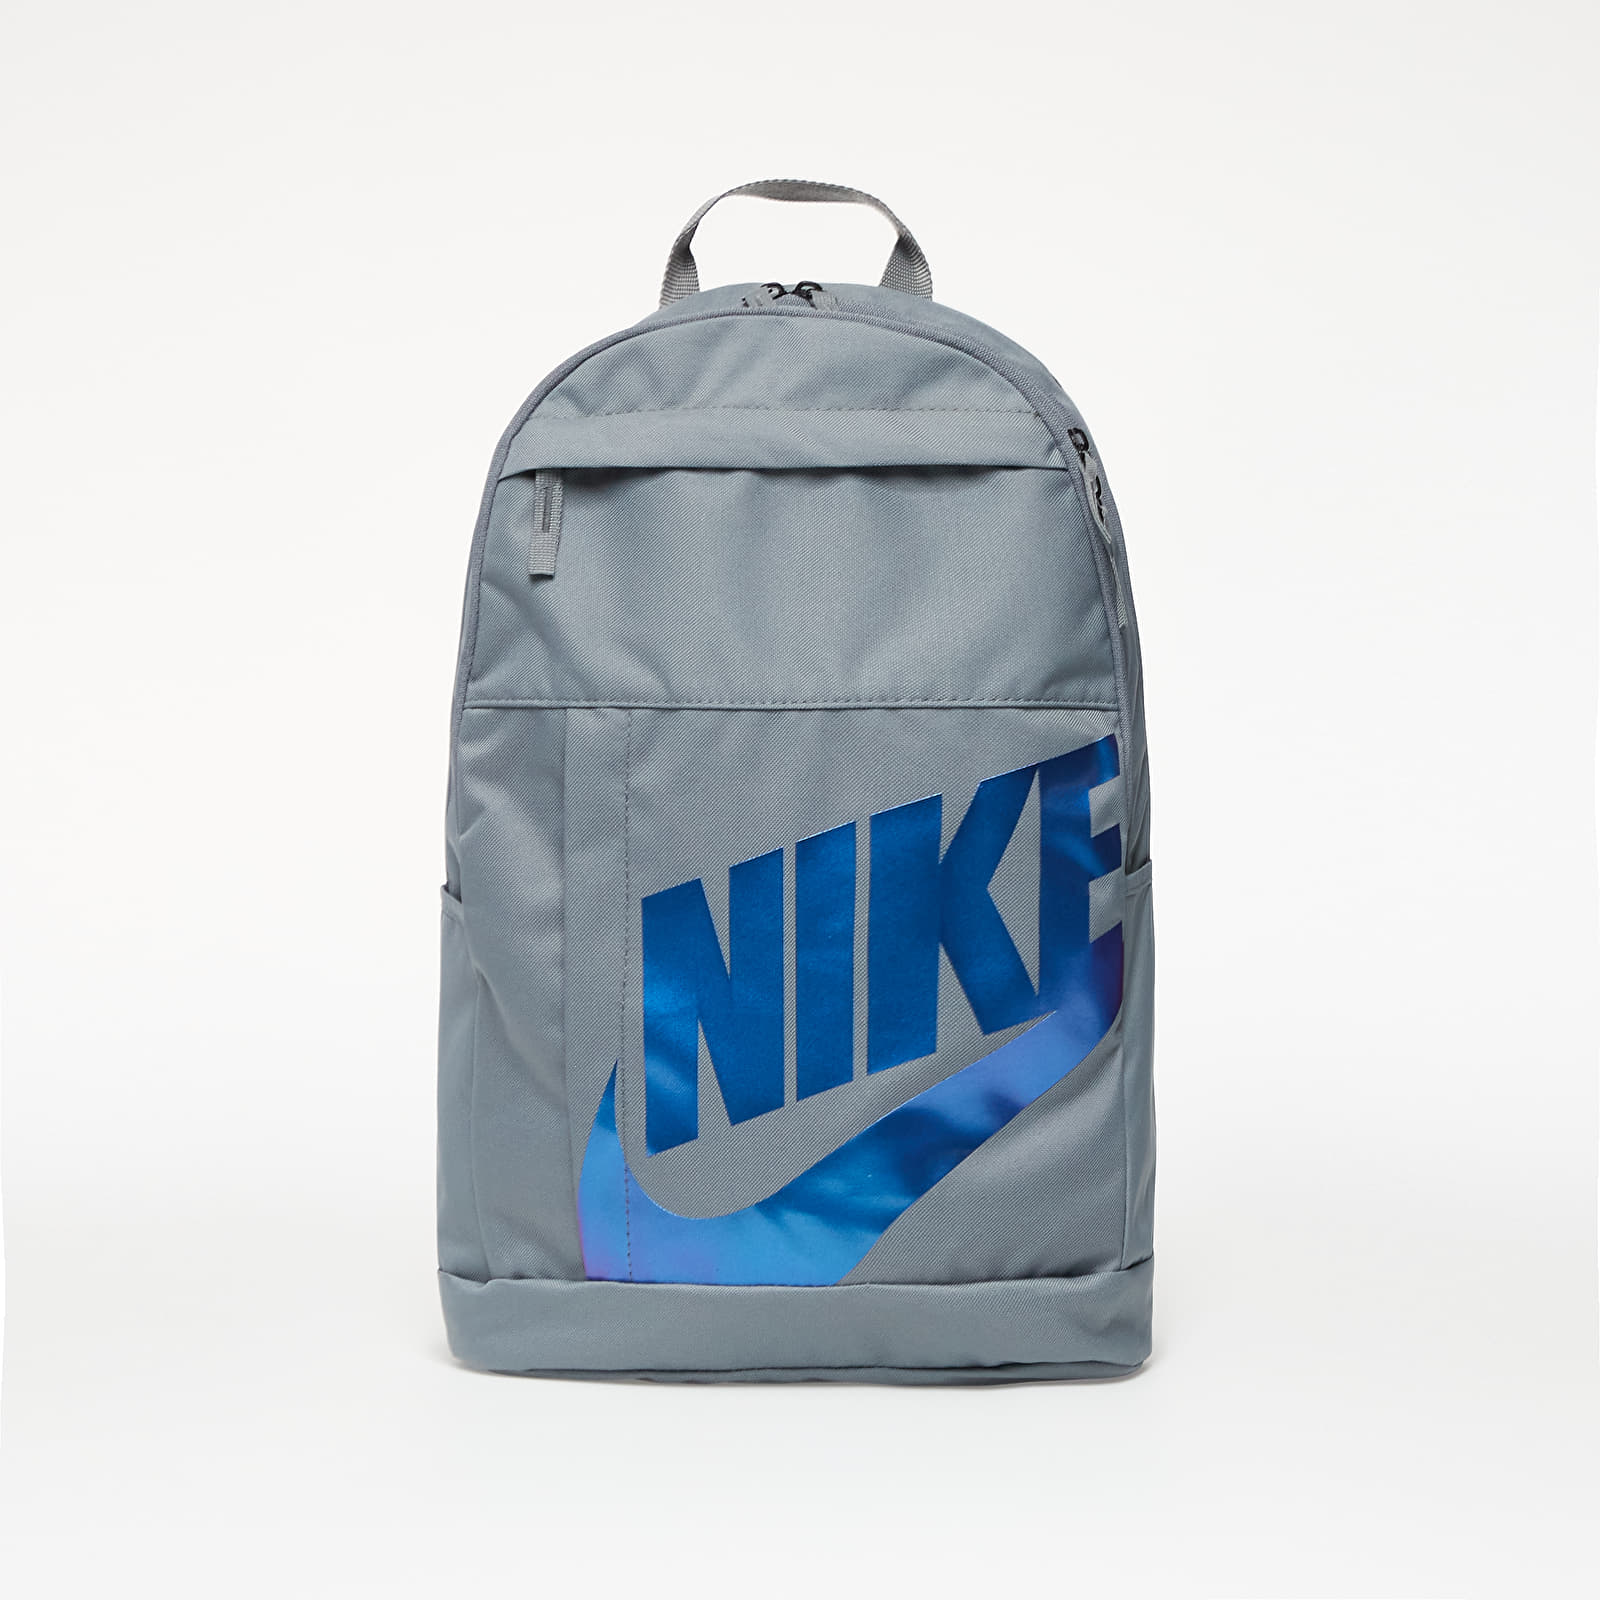 Backpacks Nike Backpack Grey